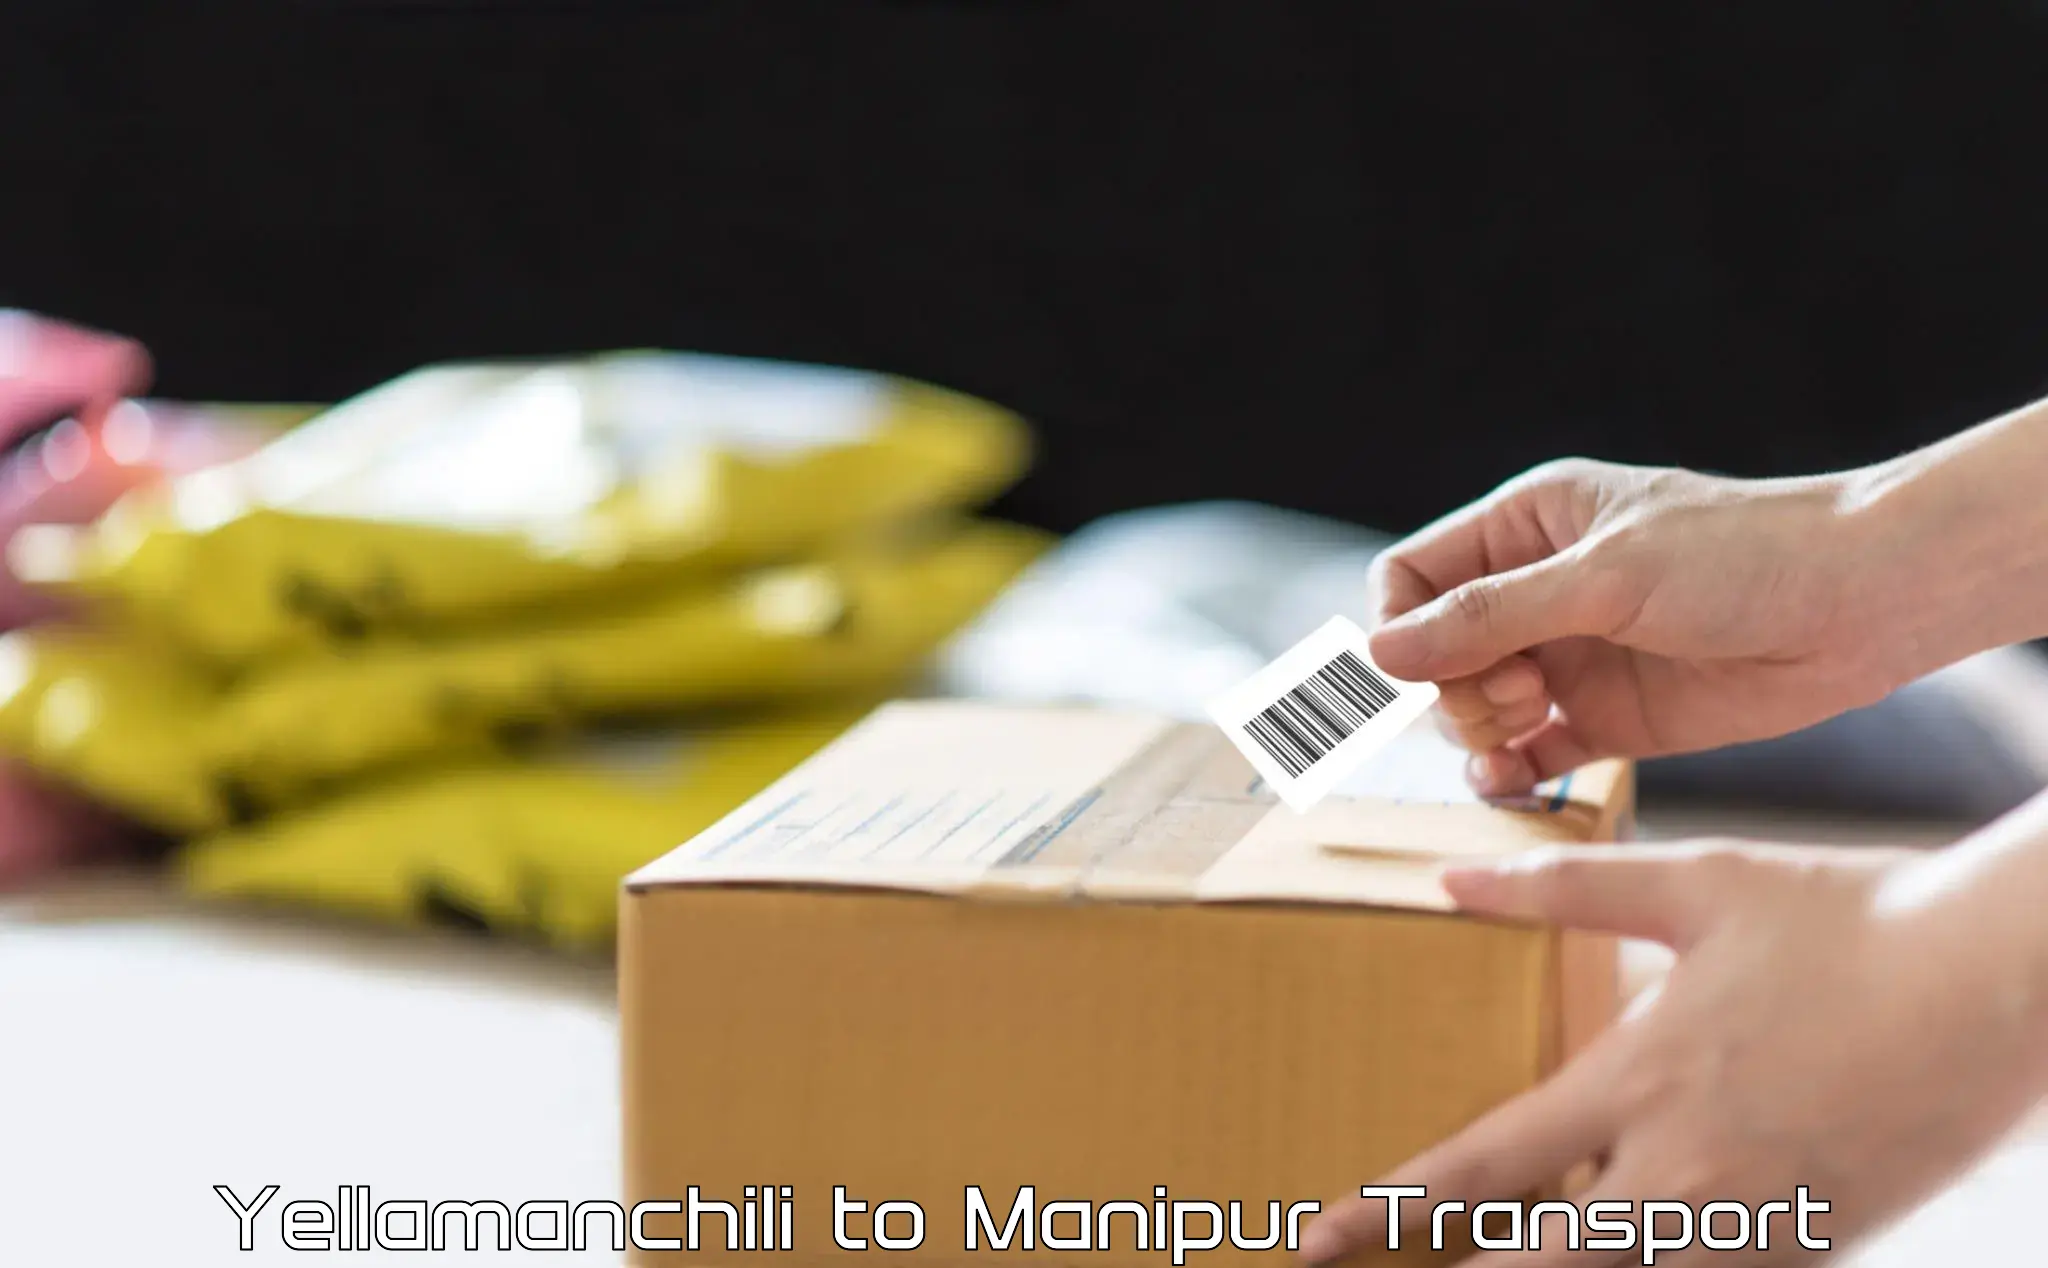 Two wheeler parcel service Yellamanchili to Ukhrul